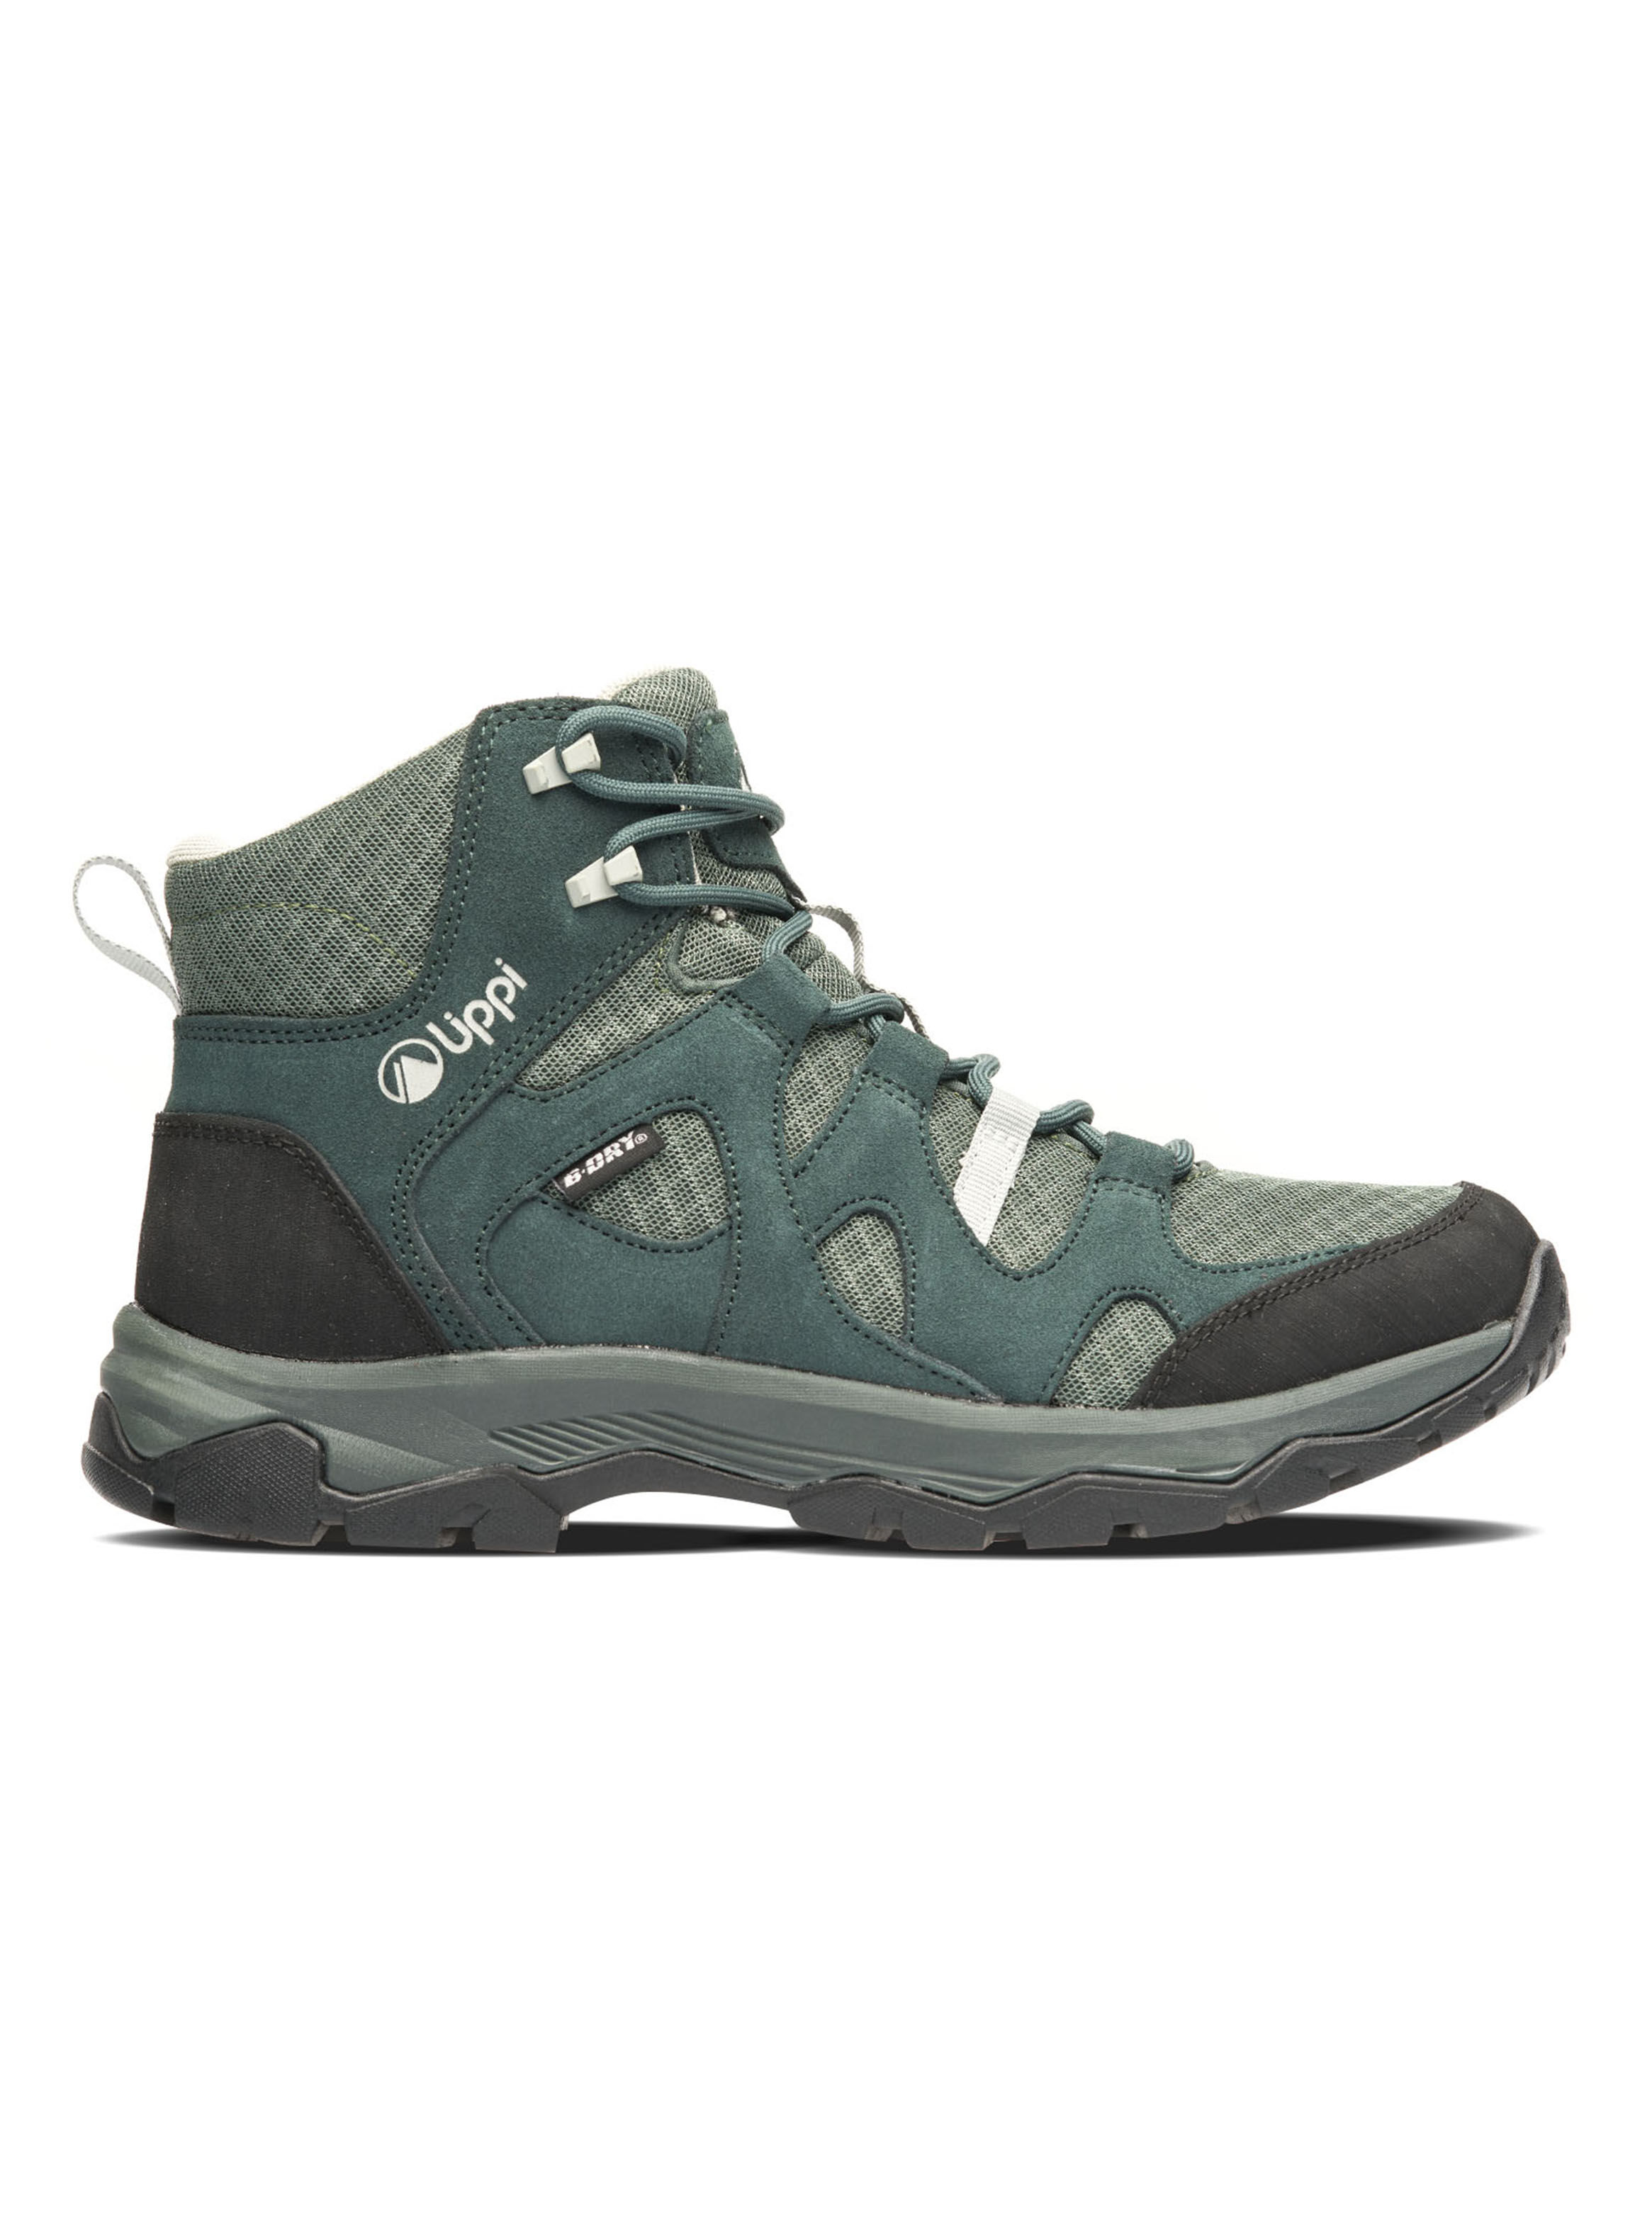 Botín de senderisml lowa Zephyr azul acero GTX trekking zapatos zapatos de montaña zapatos Outdoor 